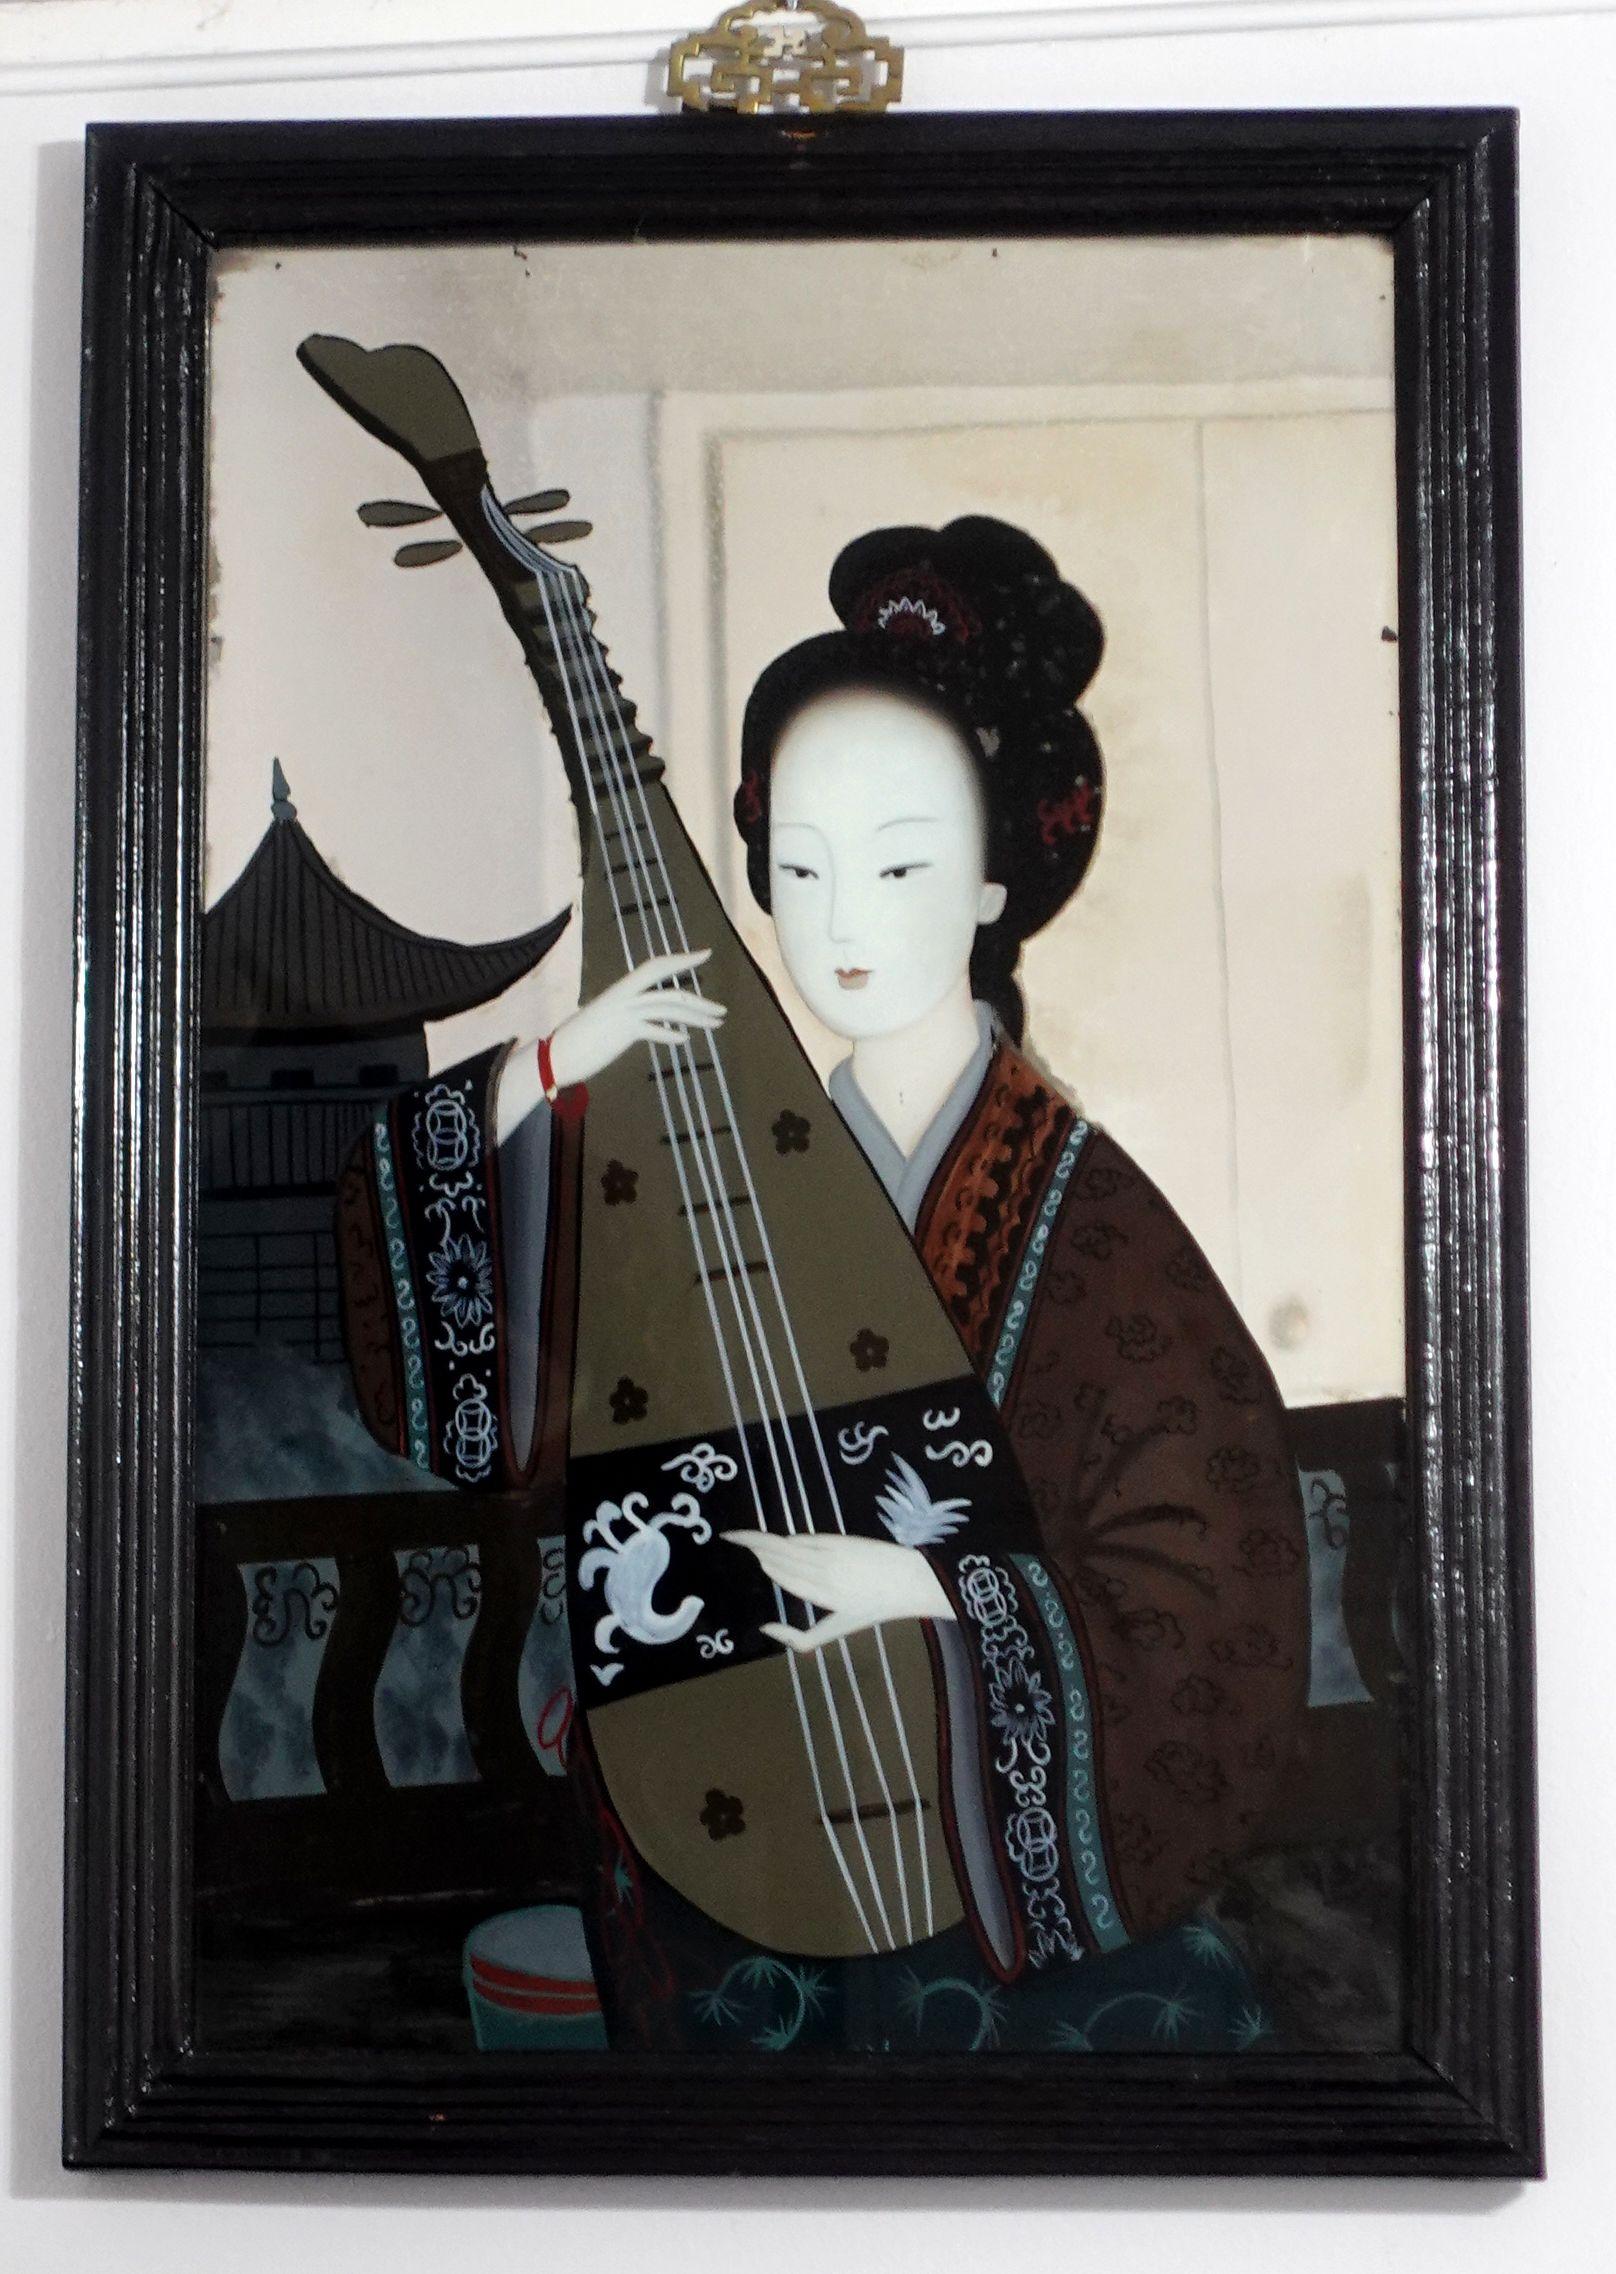 Eine große charmante spiegelverkehrte chinesische Exportmalerei aus dem späten 19. bis frühen 20. Jahrhundert, die eine Dame beim Spielen eines chinesischen Musikinstruments in ihrer Bibliothek zeigt. Das Gemälde wird mit dem originalen